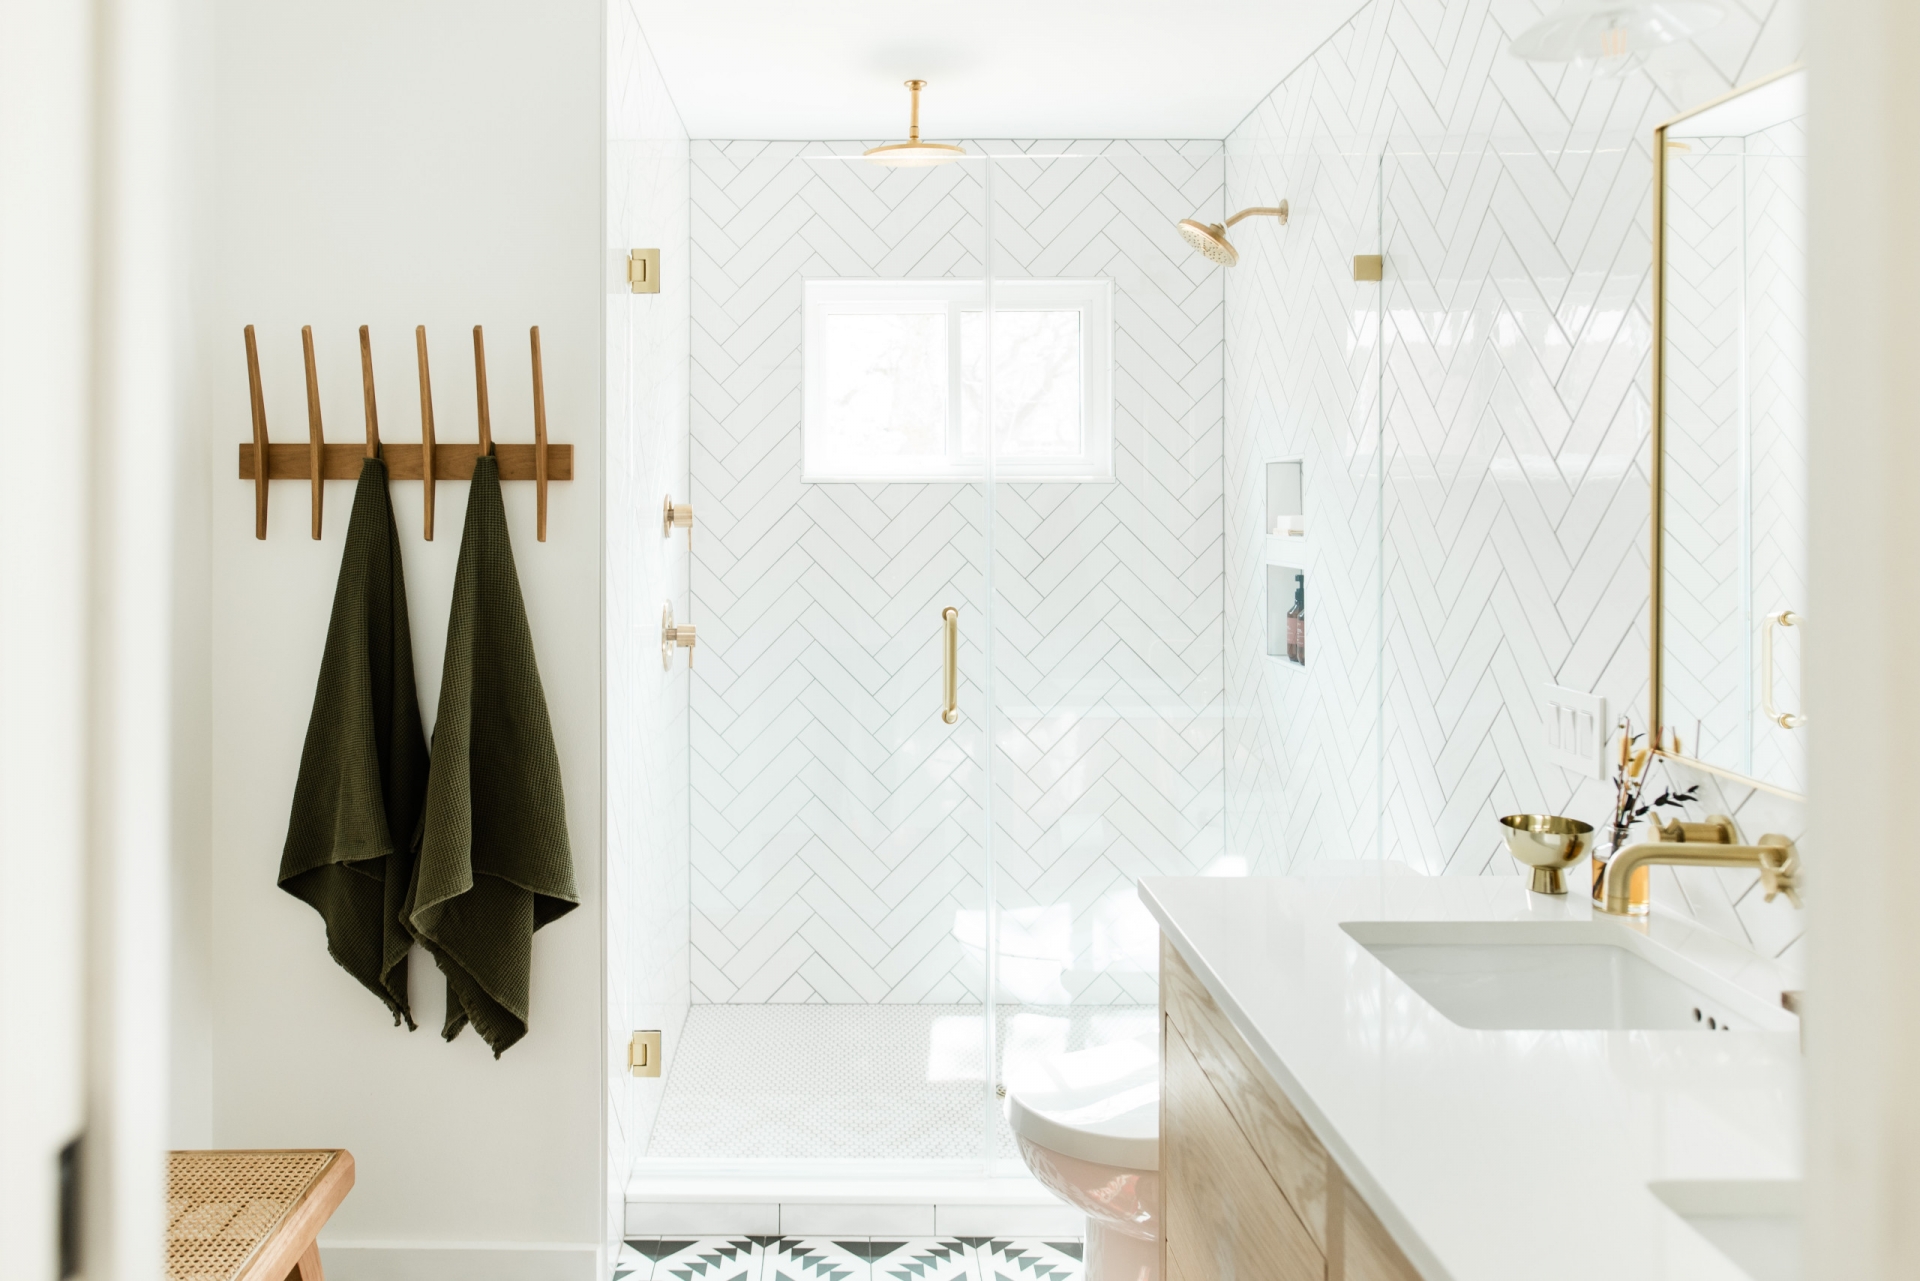 Phòng tắm sử dụng gam màu trắng chủ đạo với gạch ốp tường họa tiết xương cá sáng bóng, kết hợp vật liệu đồng thau càng tăng thêm độ lấp lánh.